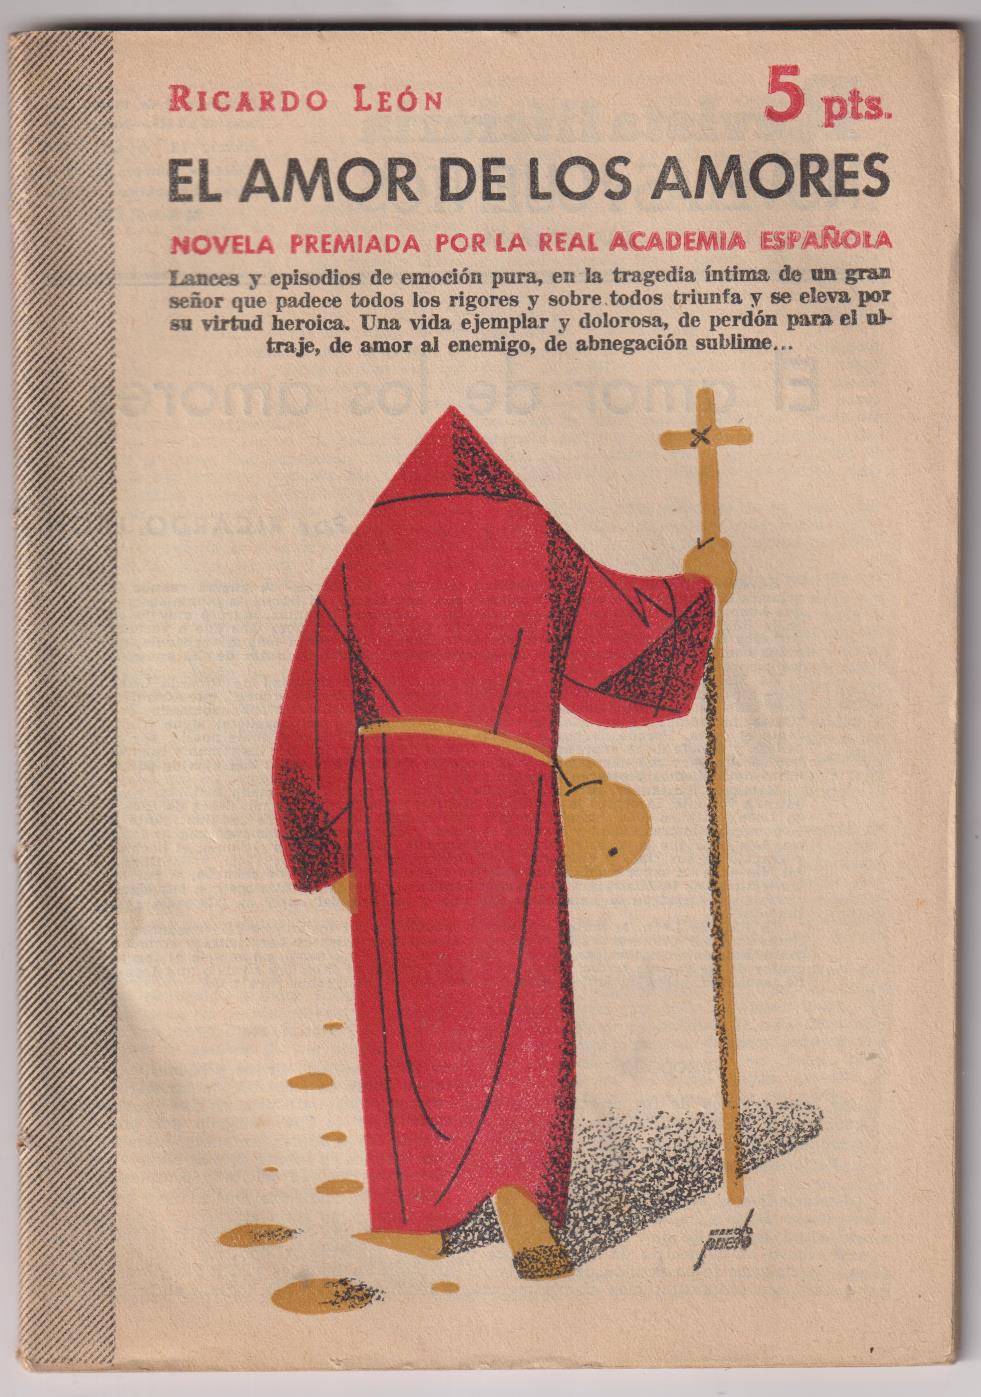 Revista Literaria Novelas y Cuentos nº 1295. R. León. El Amor de los Amores. Año 1956